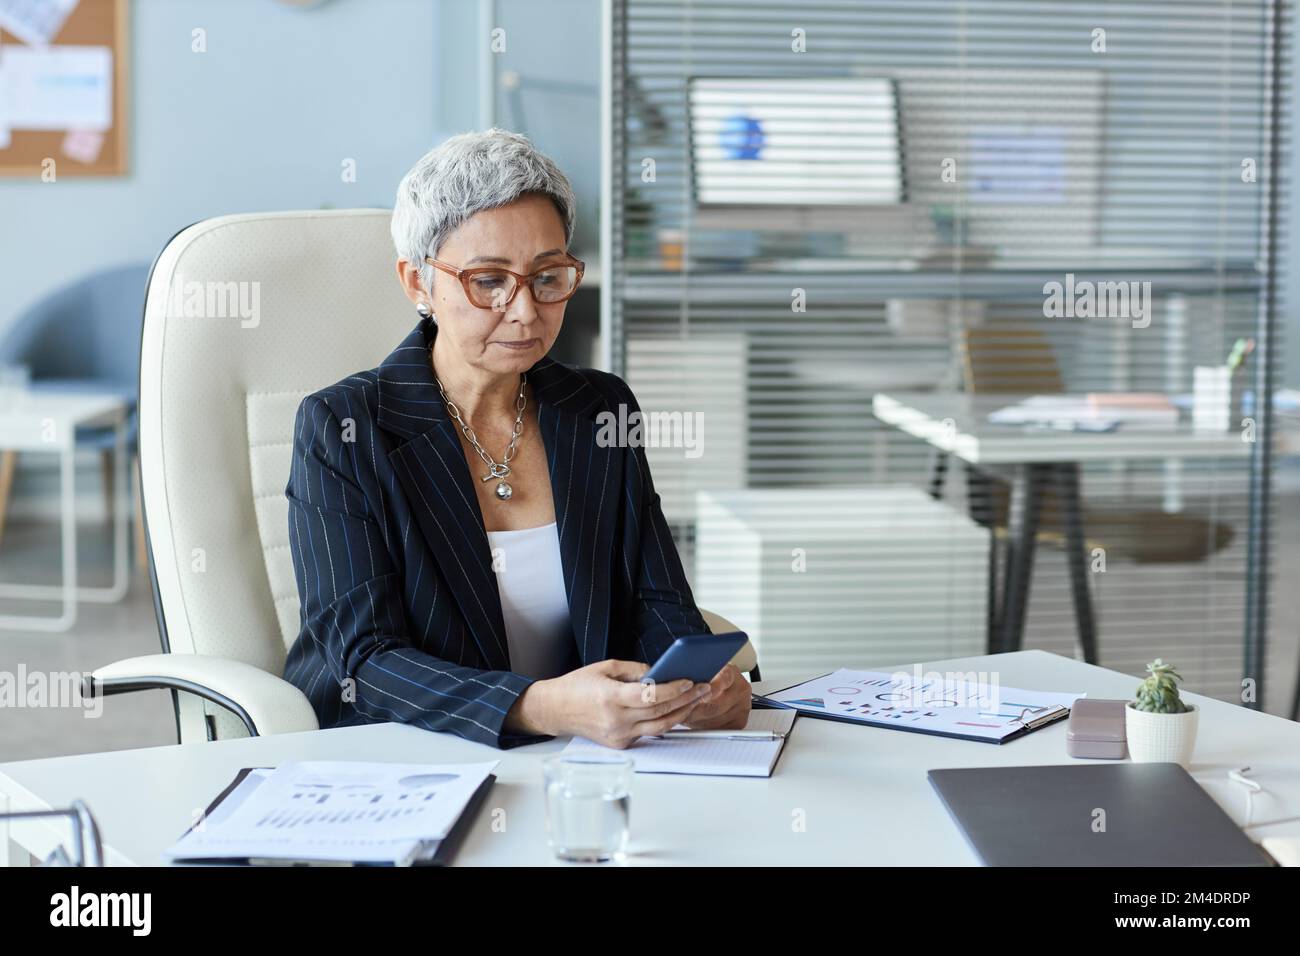 Portrait d'une femme âgée en tant que chef de sexe féminin, assise au bureau et utilisant un smartphone, espace de copie Banque D'Images